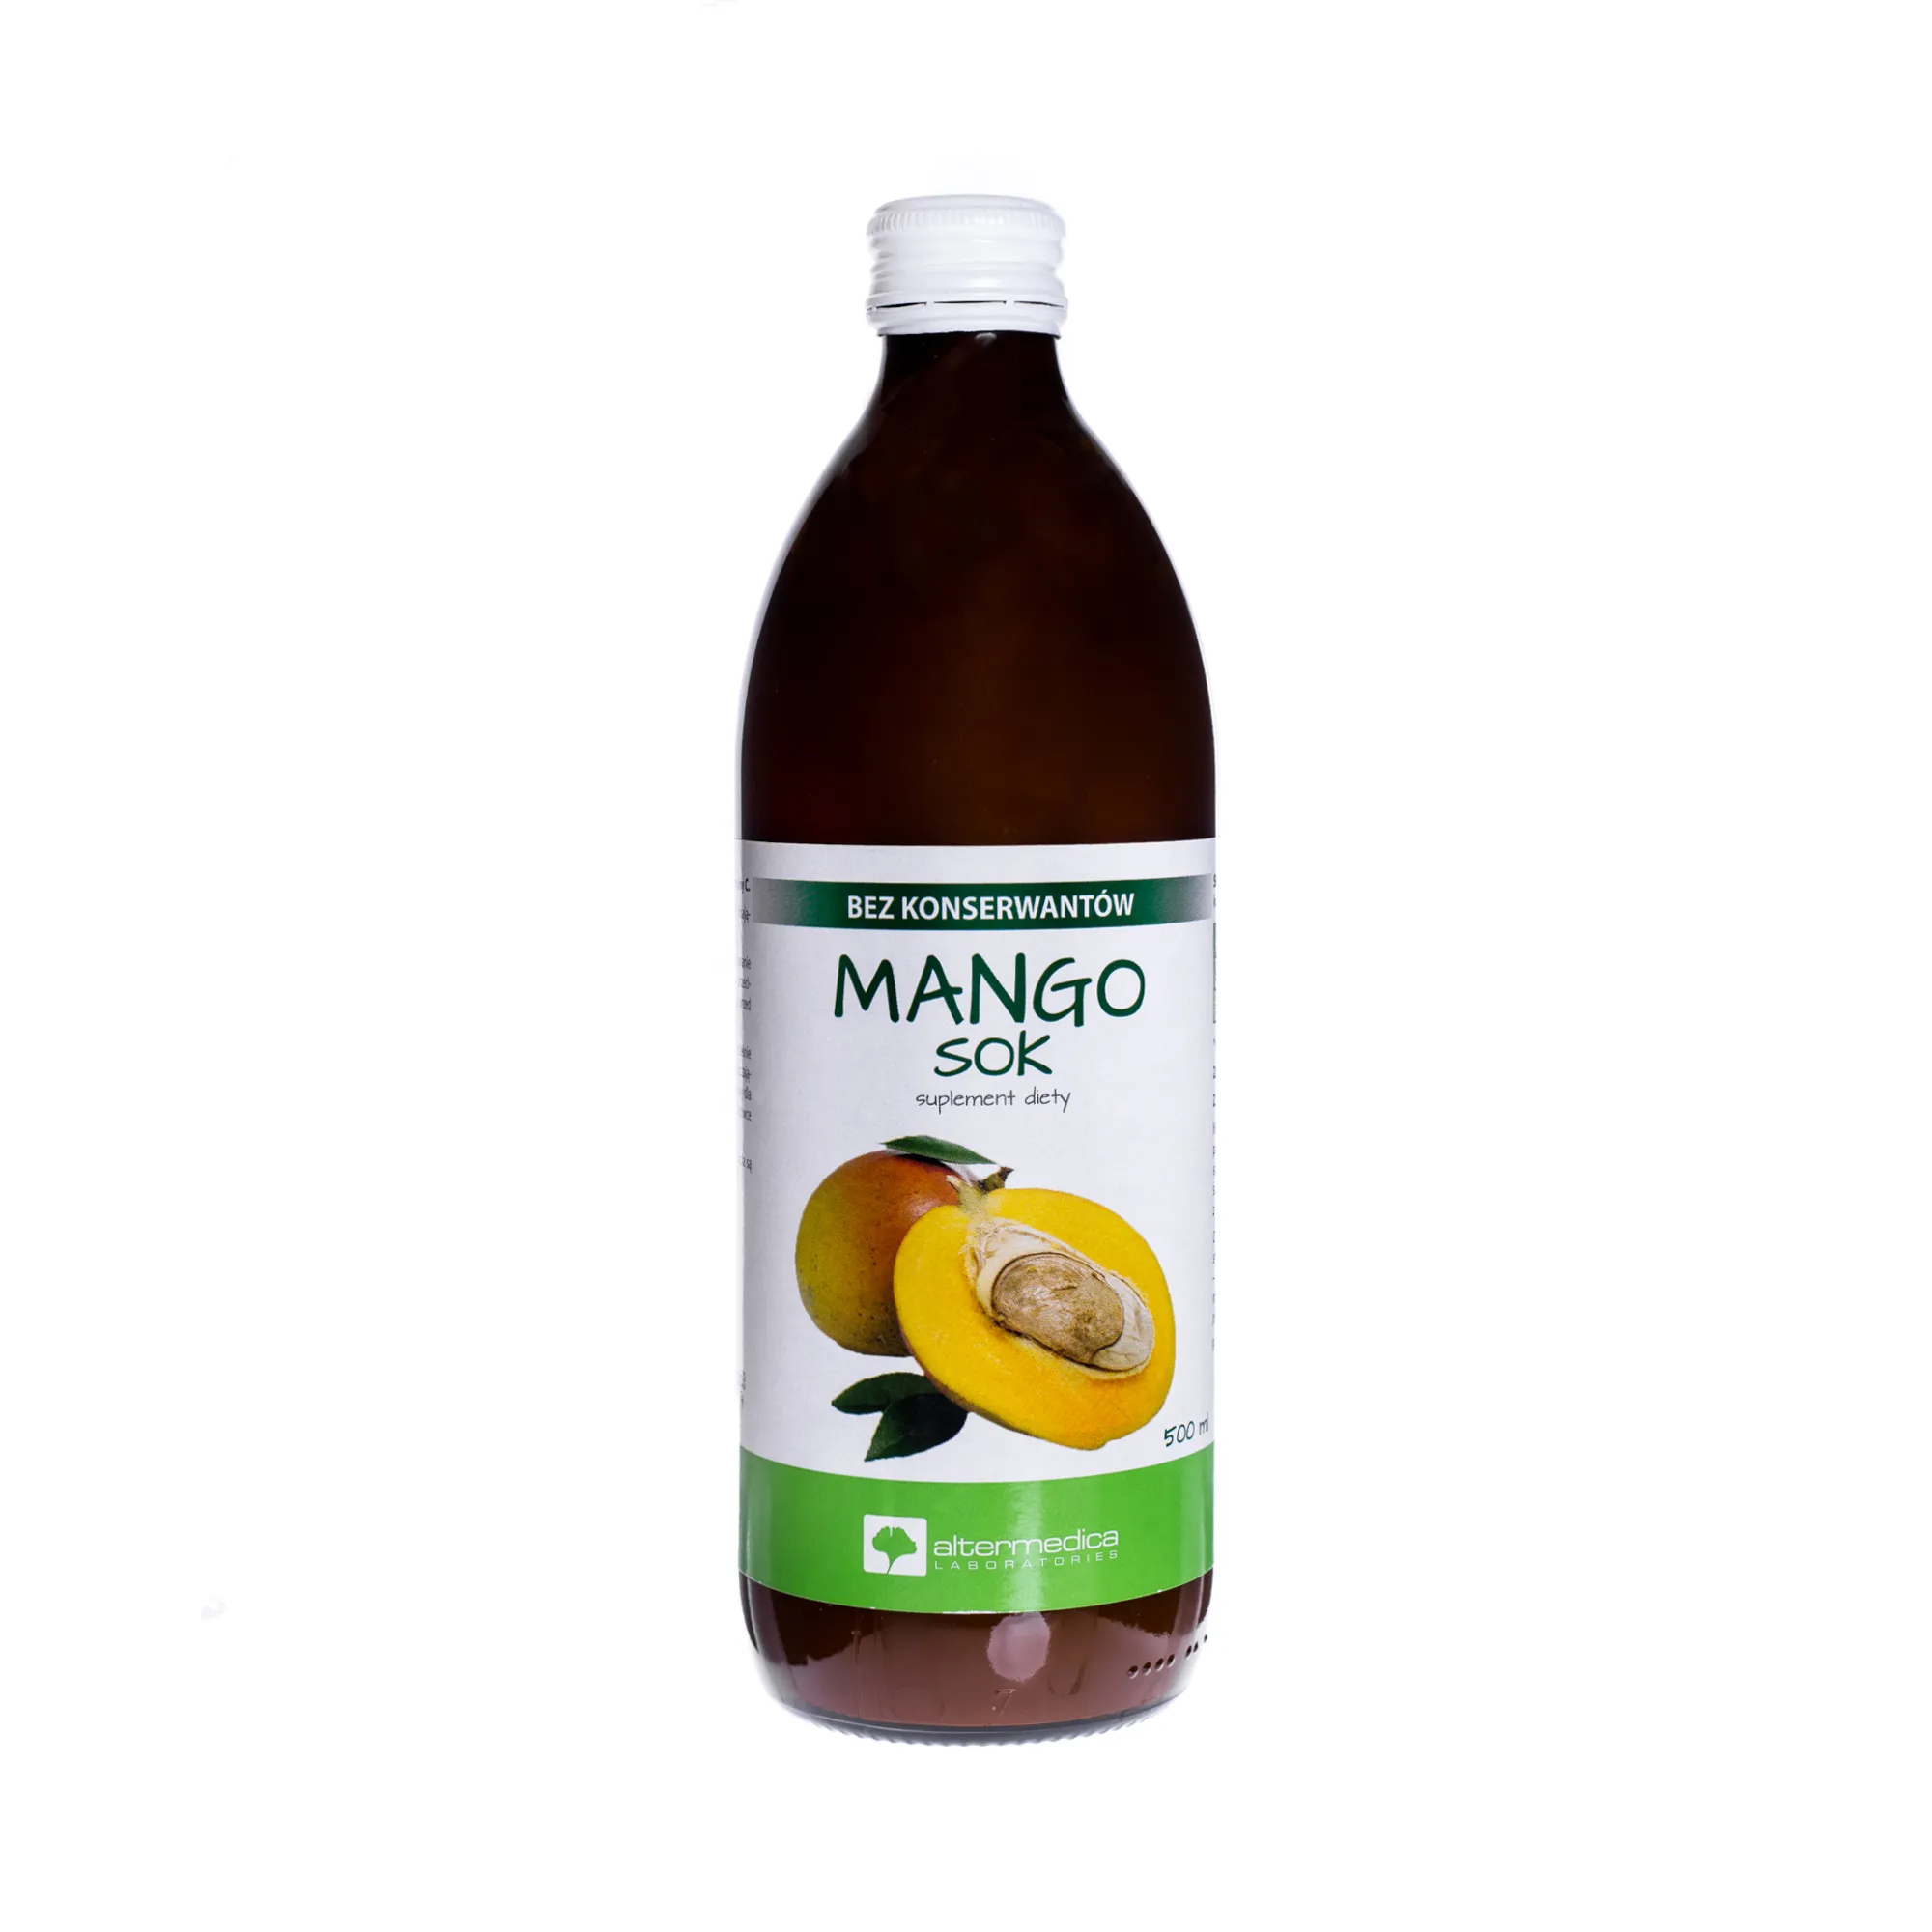 Mango sok, suplement diety, 500 ml